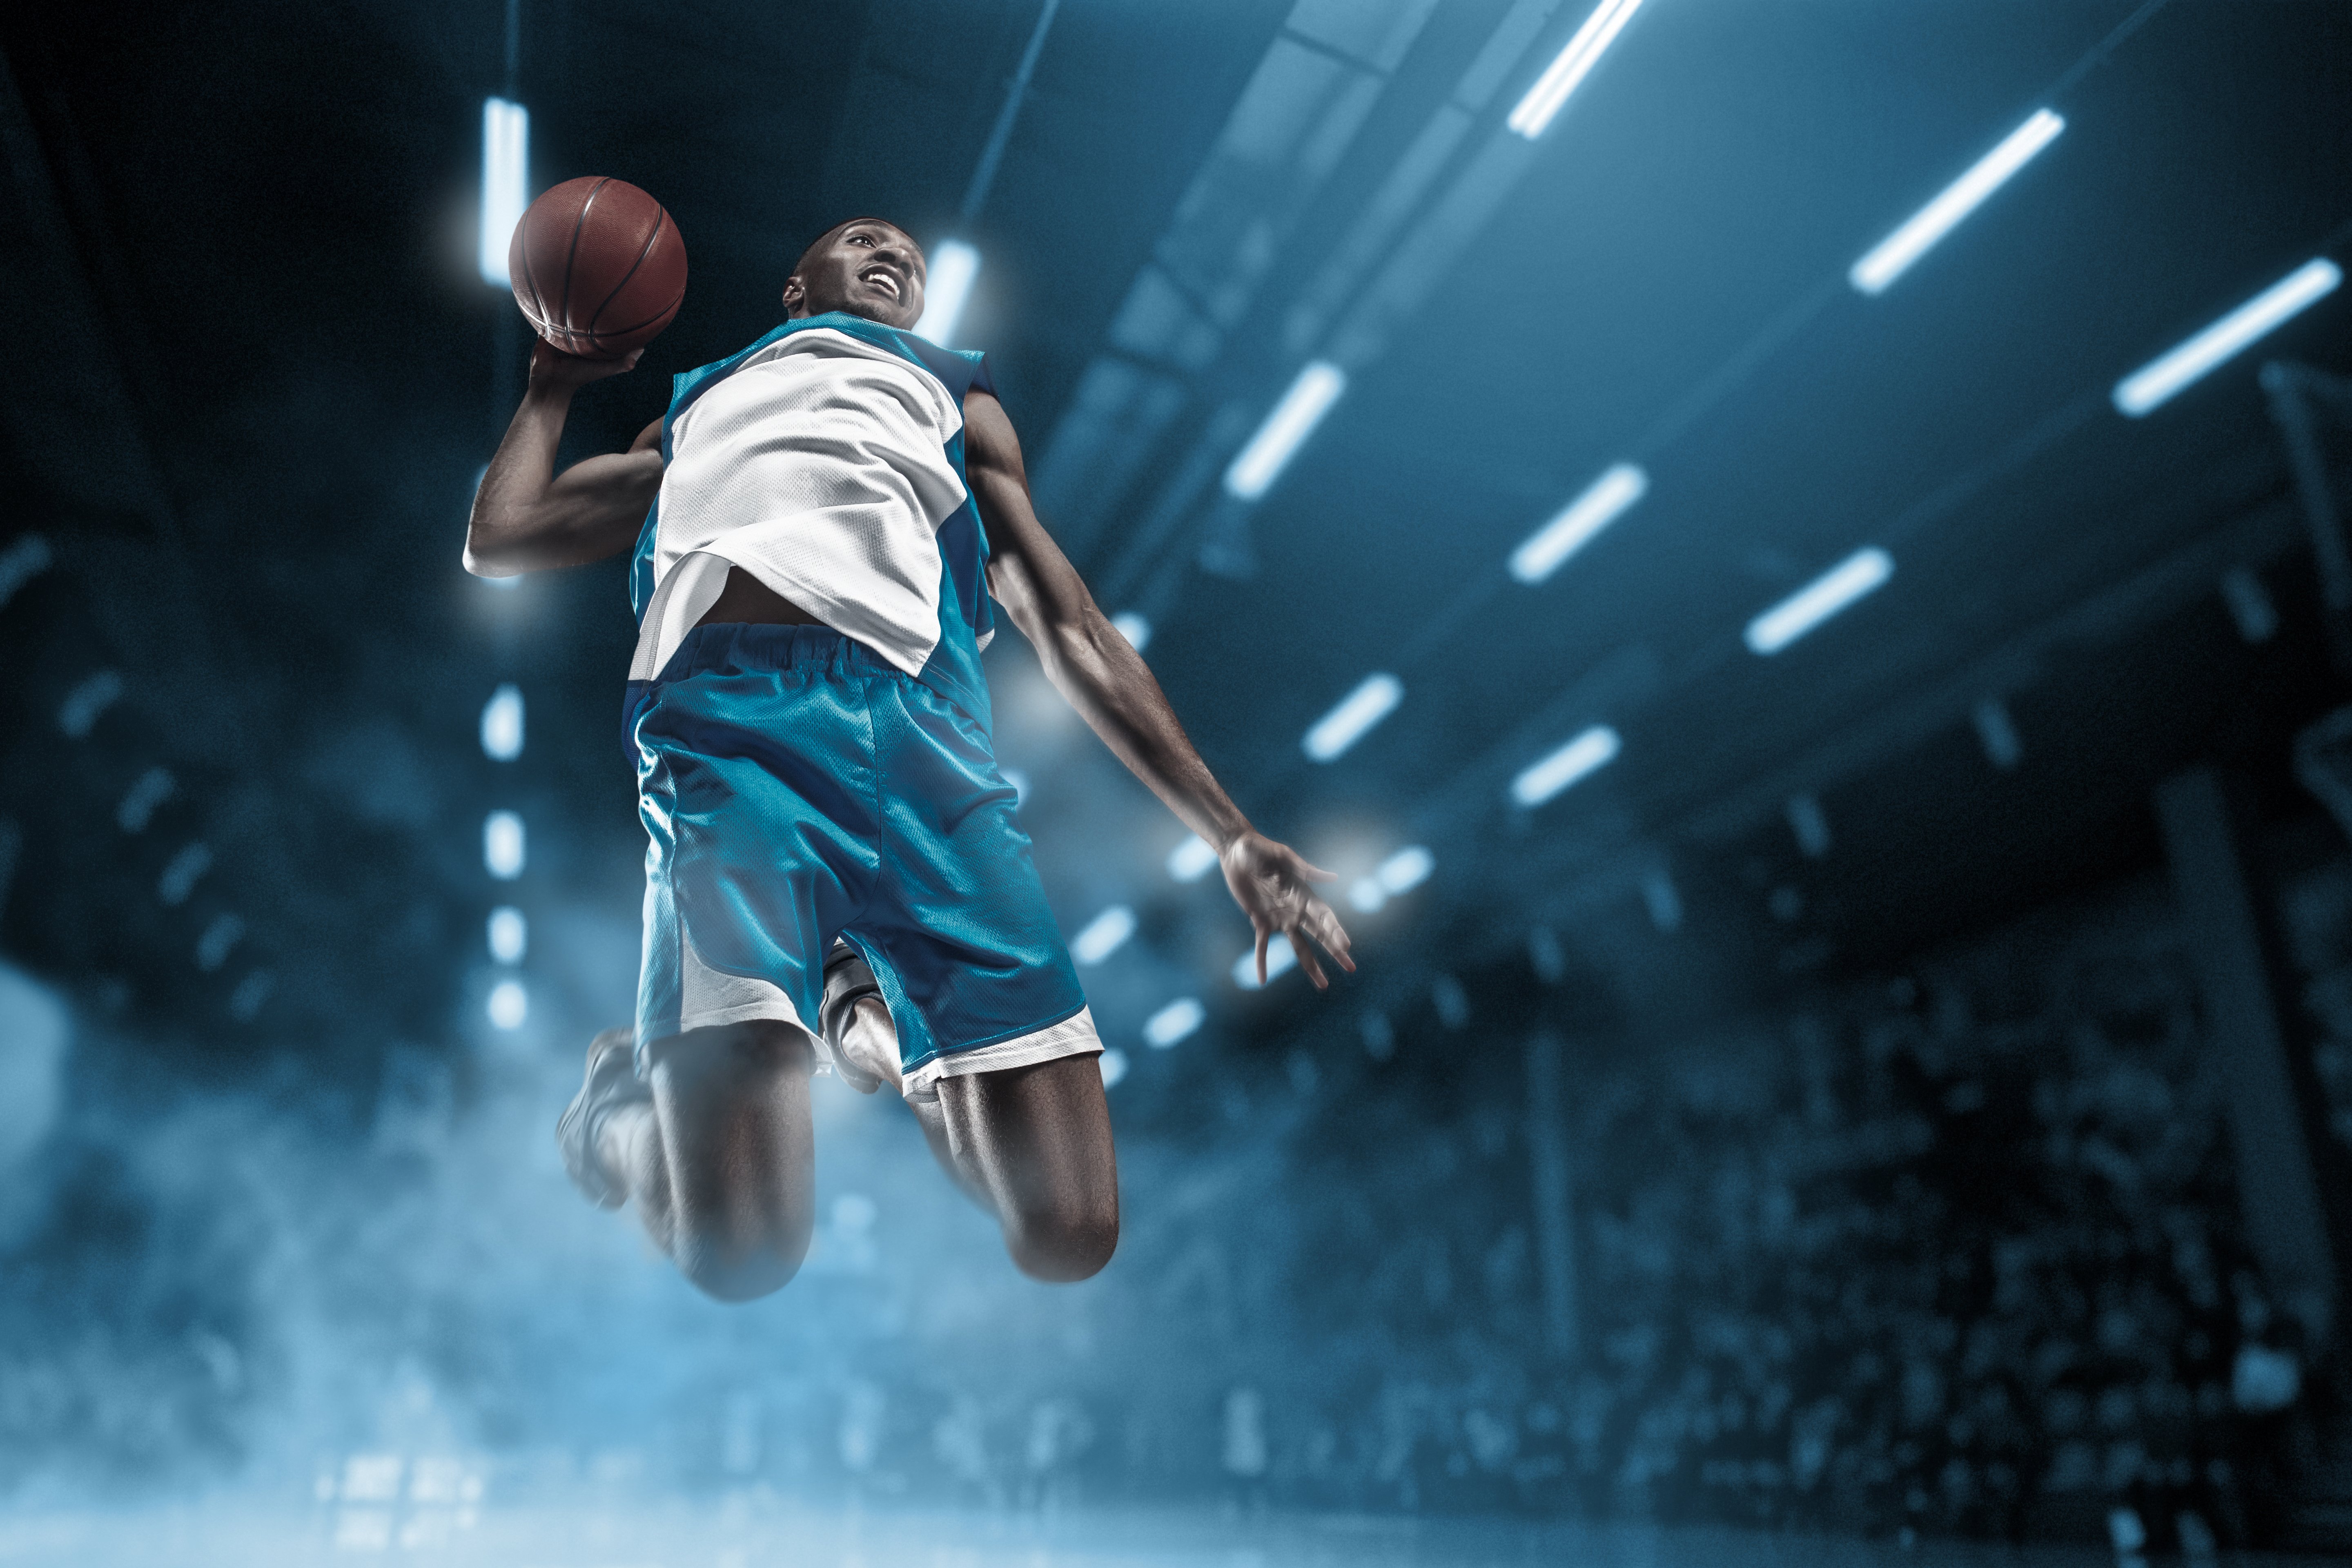 basketball-player-on-big-professional-arena-during-2021-08-26-17-40-53-utc